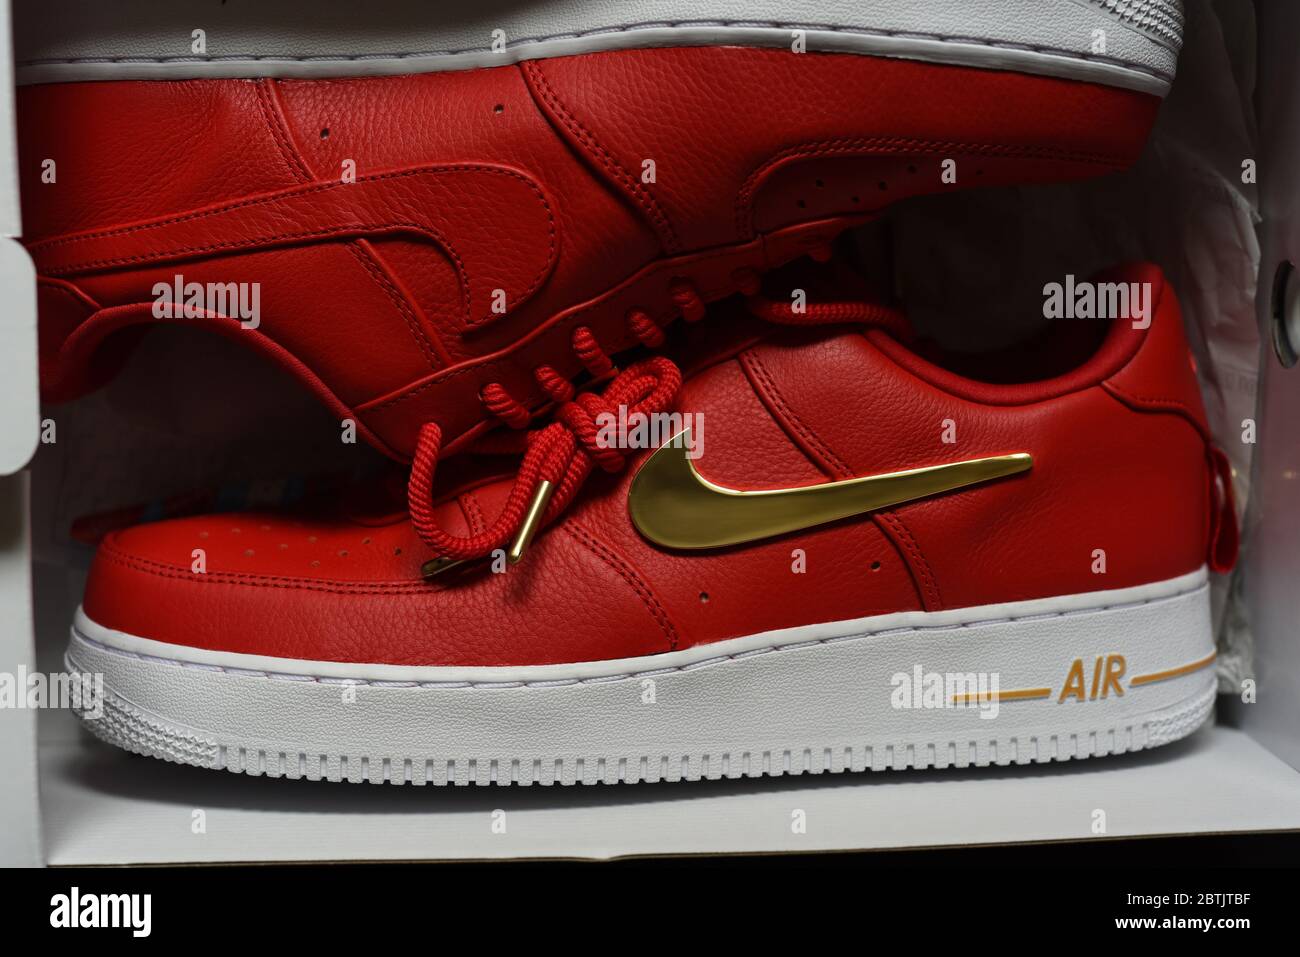 Una sneaker atletica da collezione Nike, modello Air con tomaia rossa, suola  bianca e dettagli dorati, tra cui il famoso logo Swoosh e il ti Foto stock  - Alamy